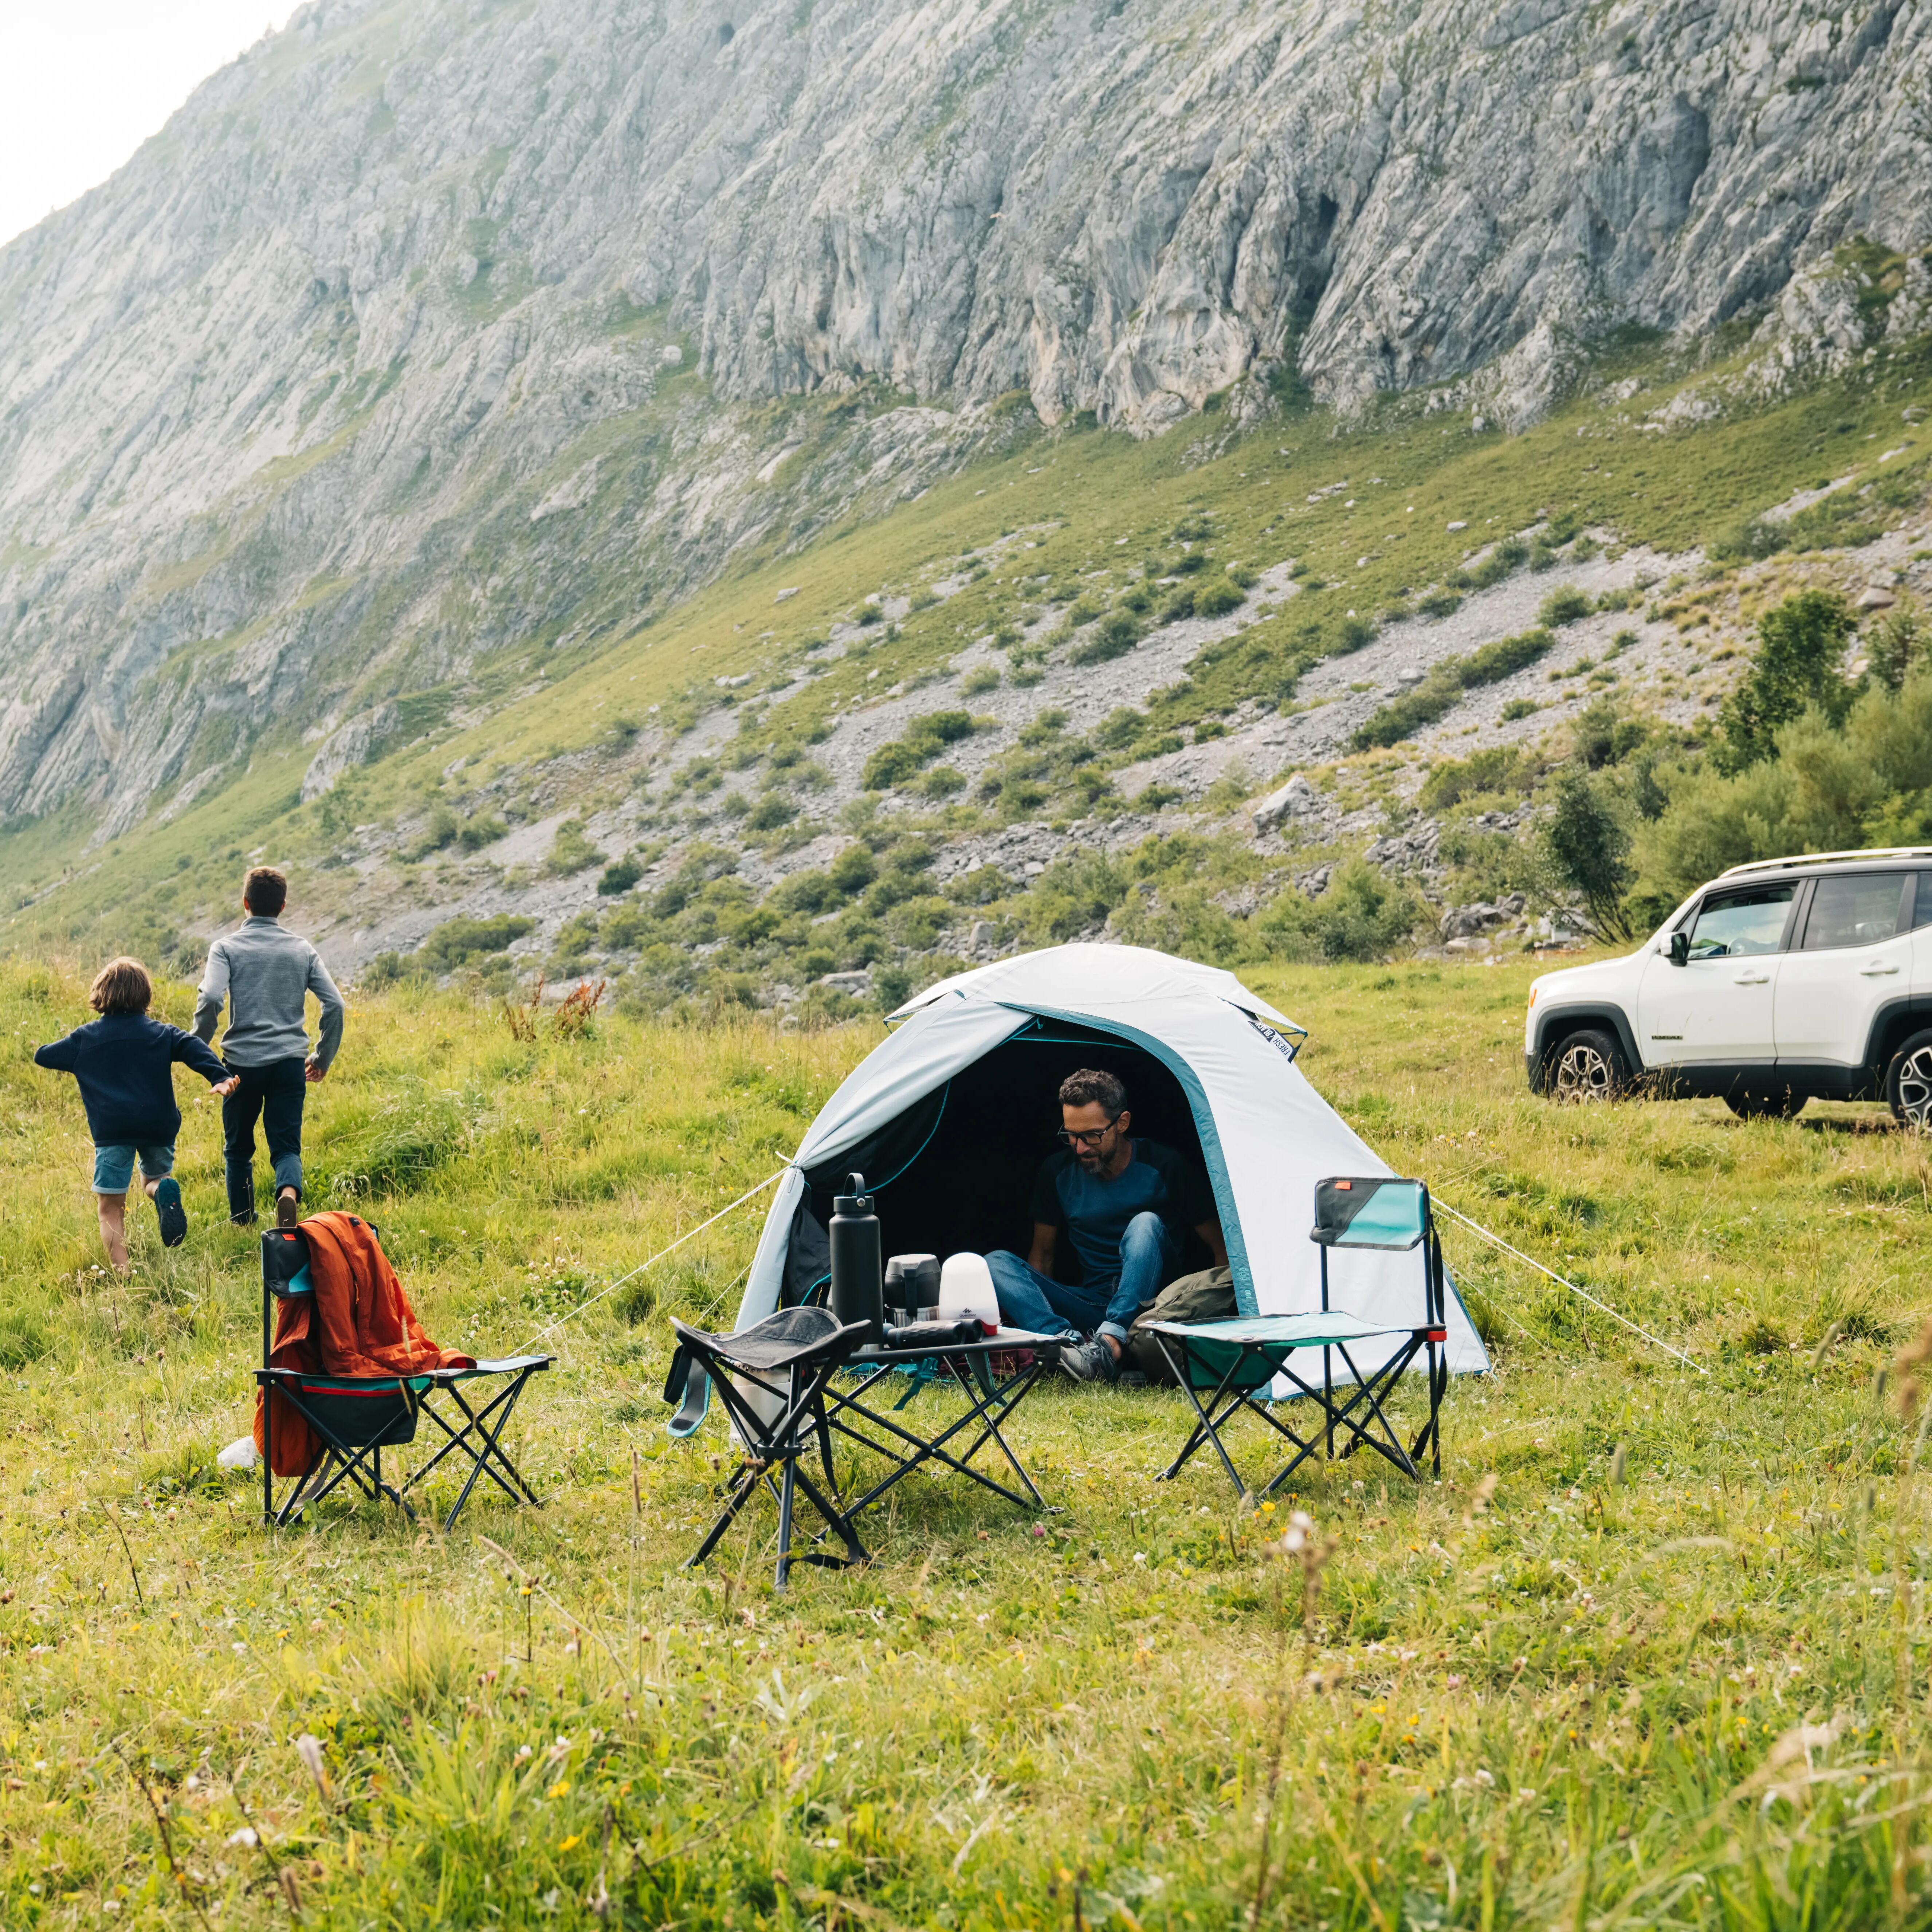 Sofá /cama hinchable camping excursión de segunda mano por 15 EUR